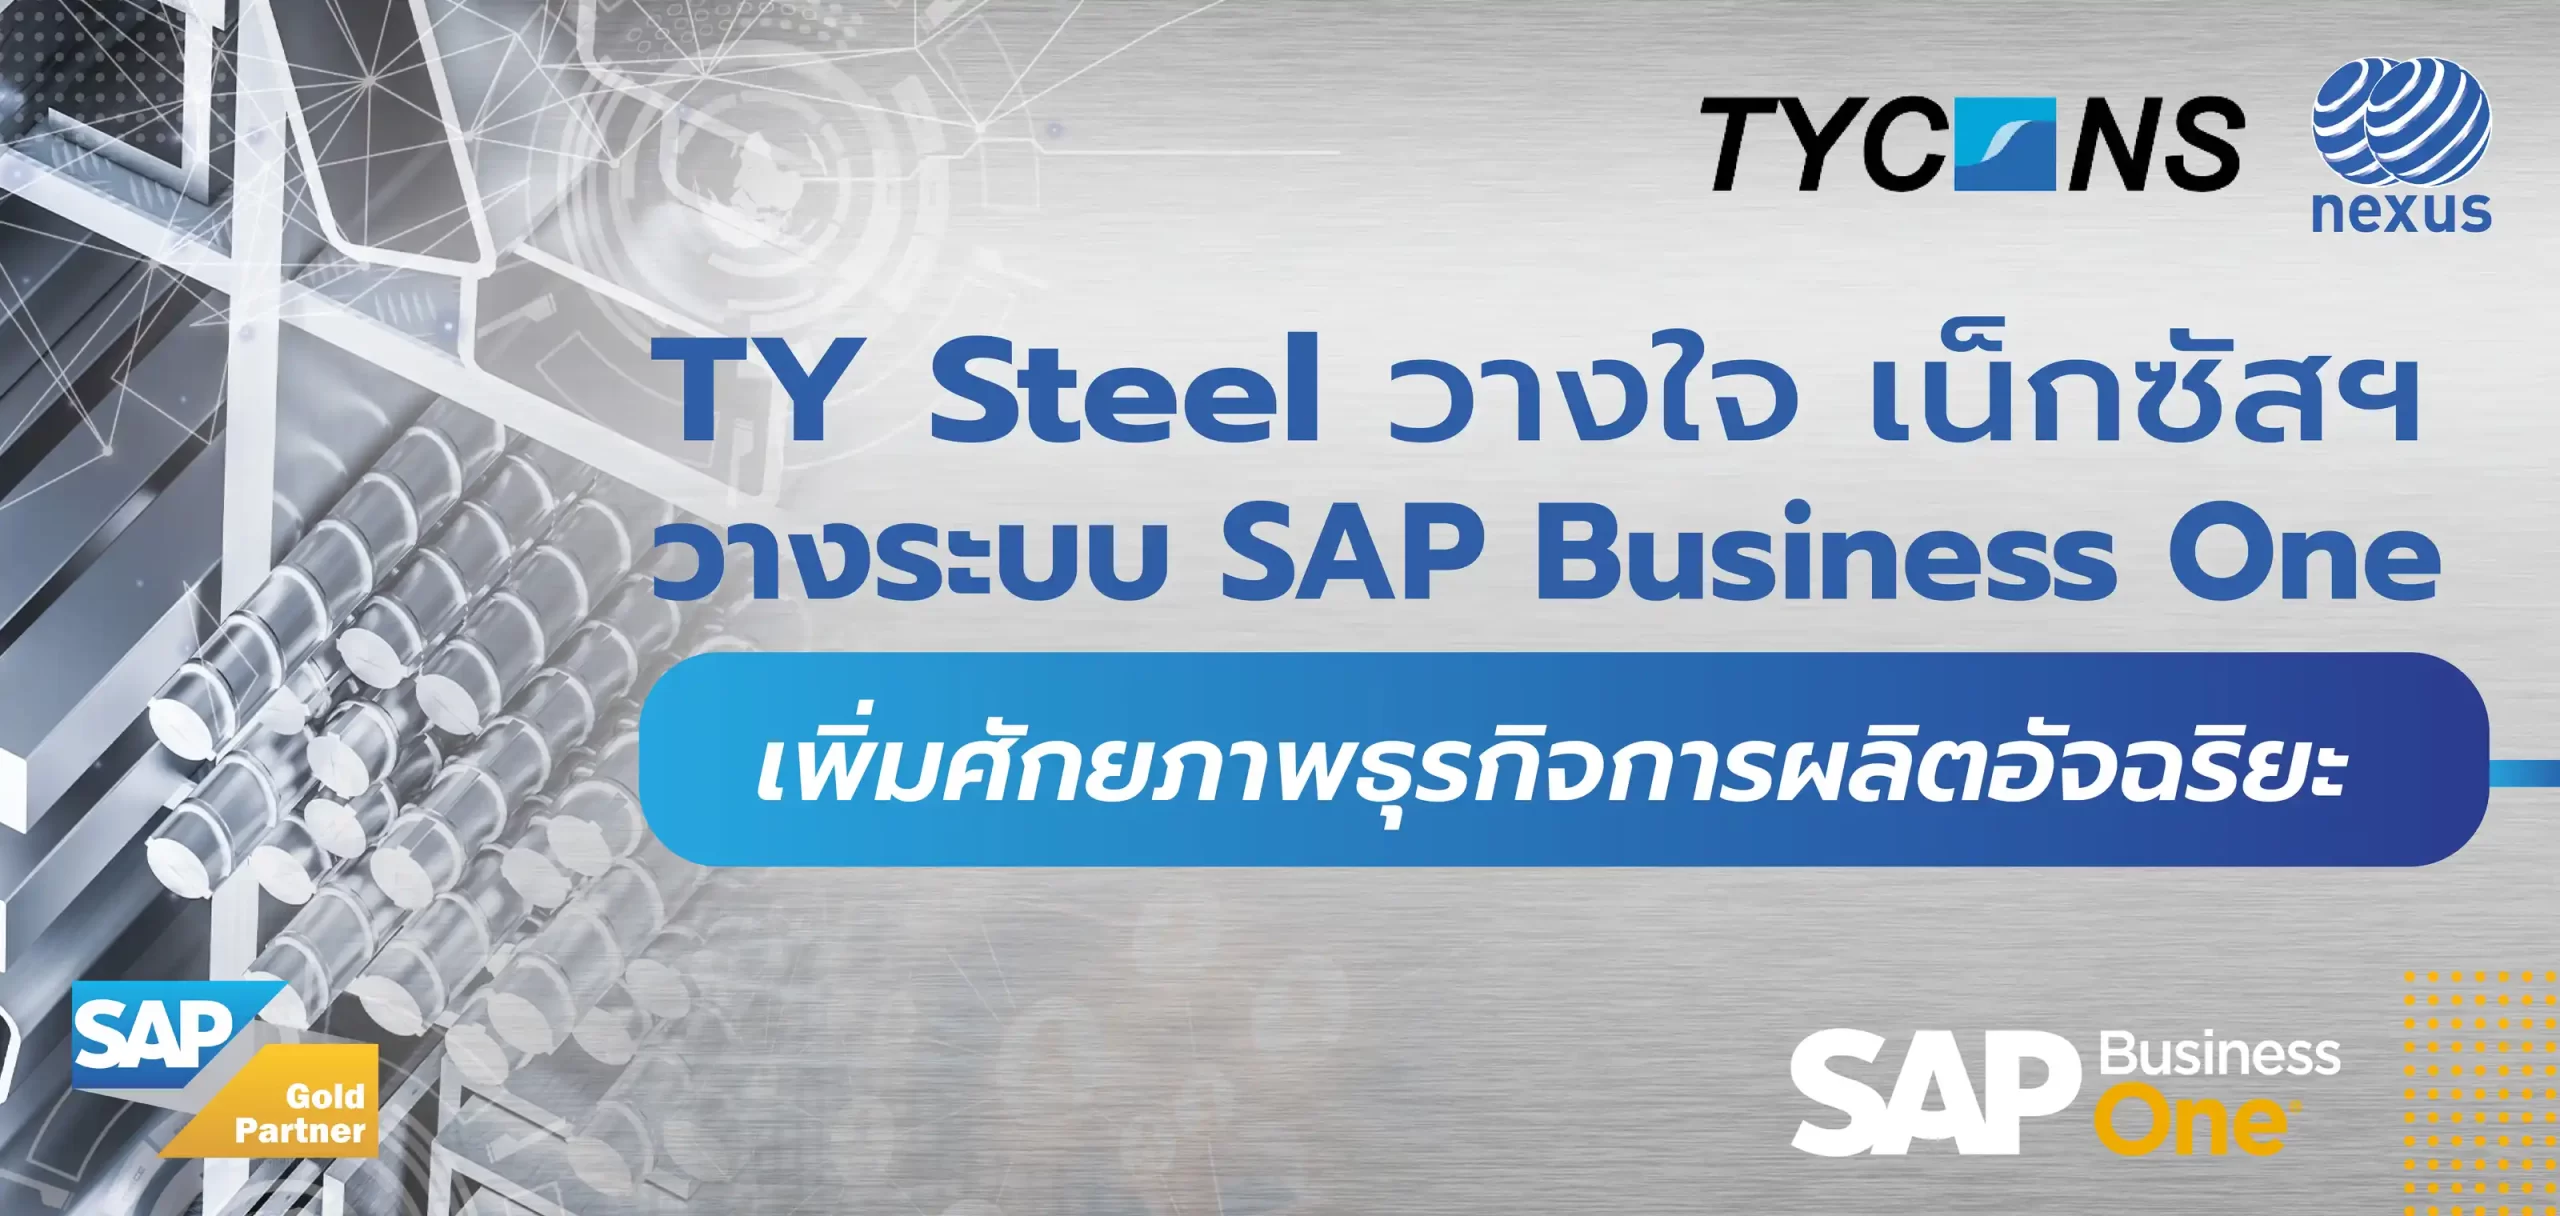 ทีวาย สตีล วางใจ เน็กซัส วางระบบ SAP Business One เพิ่มศักยภาพธุรกิจการผลิตอัจฉริยะ